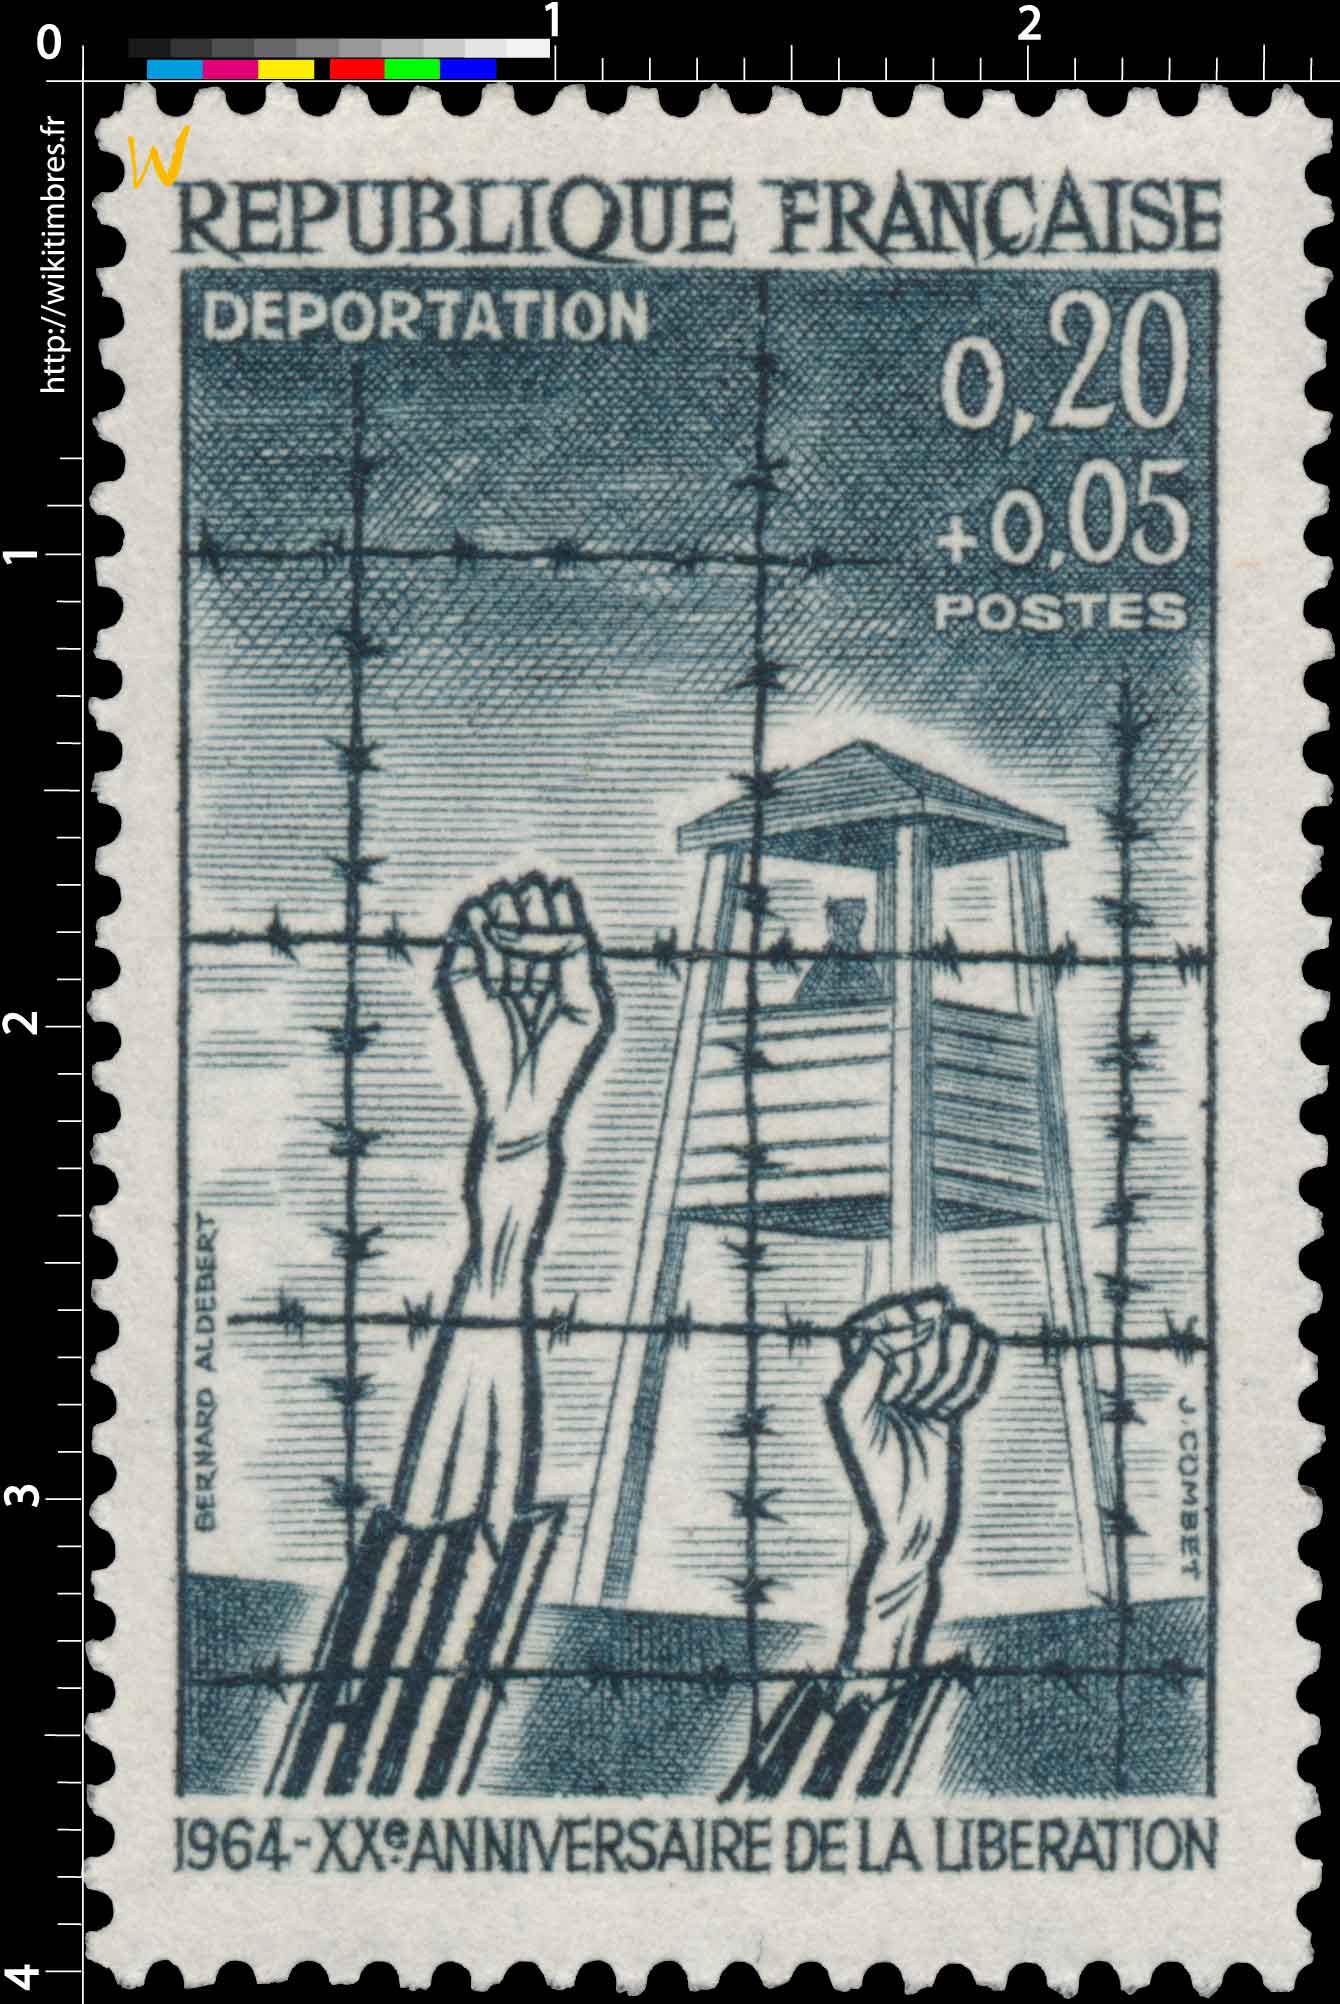 DÉPORTATION 1964 - XXe ANNIVERSAIRE DE LA LIBÉRATION